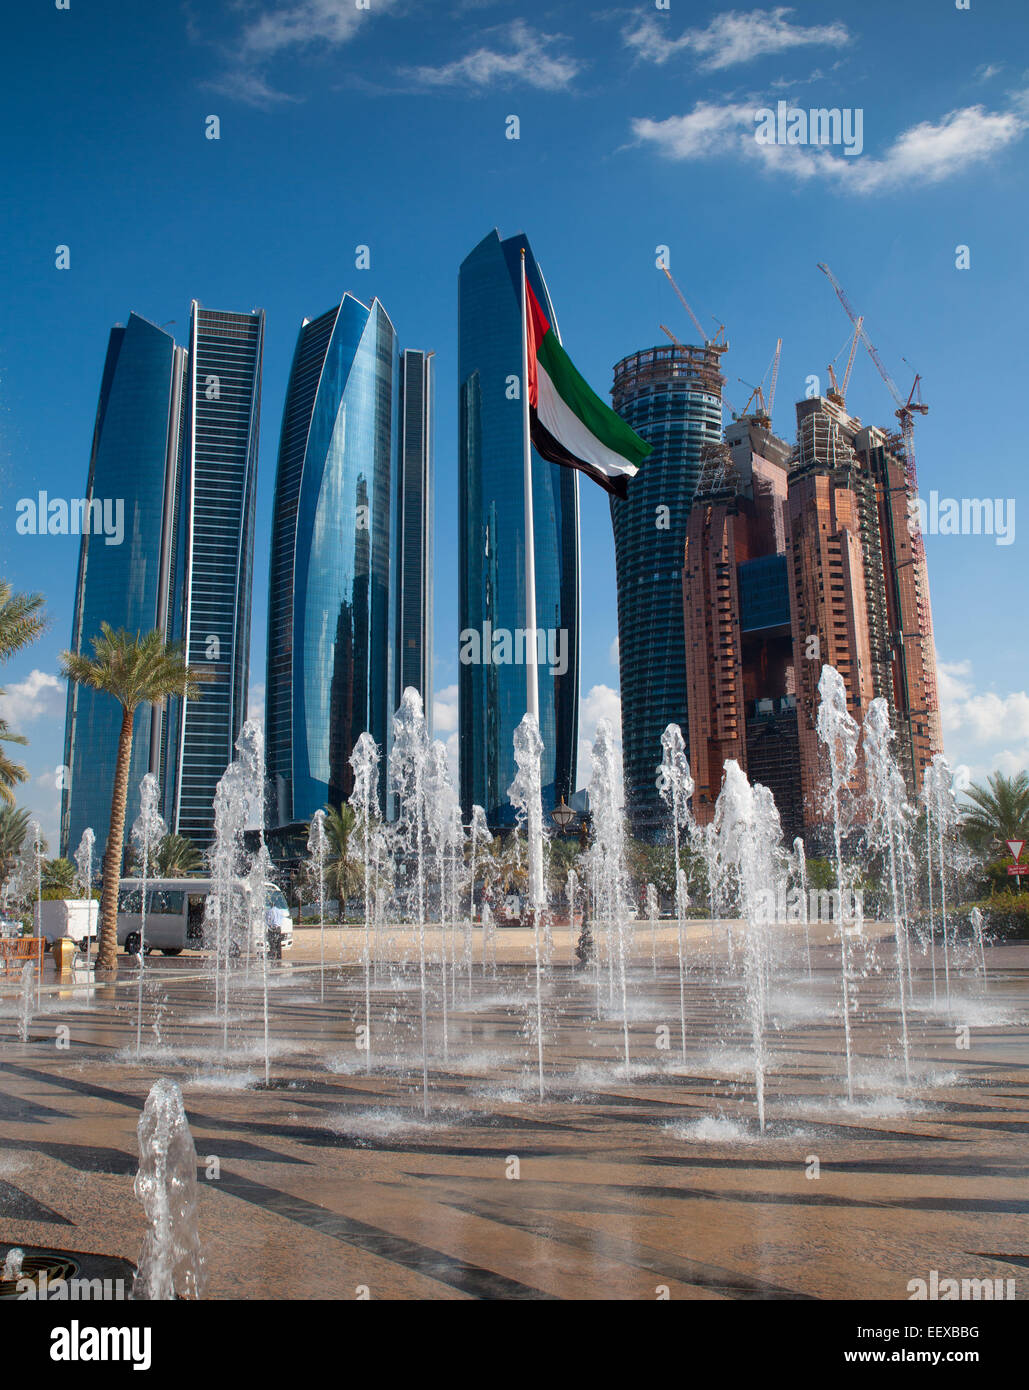 Grattacieli moderni di Abu Dhabi, capitale degli Emirati Arabi Uniti. Fontane e Bandiera degli Emirati arabi uniti in primo piano. Città in background. Foto Stock